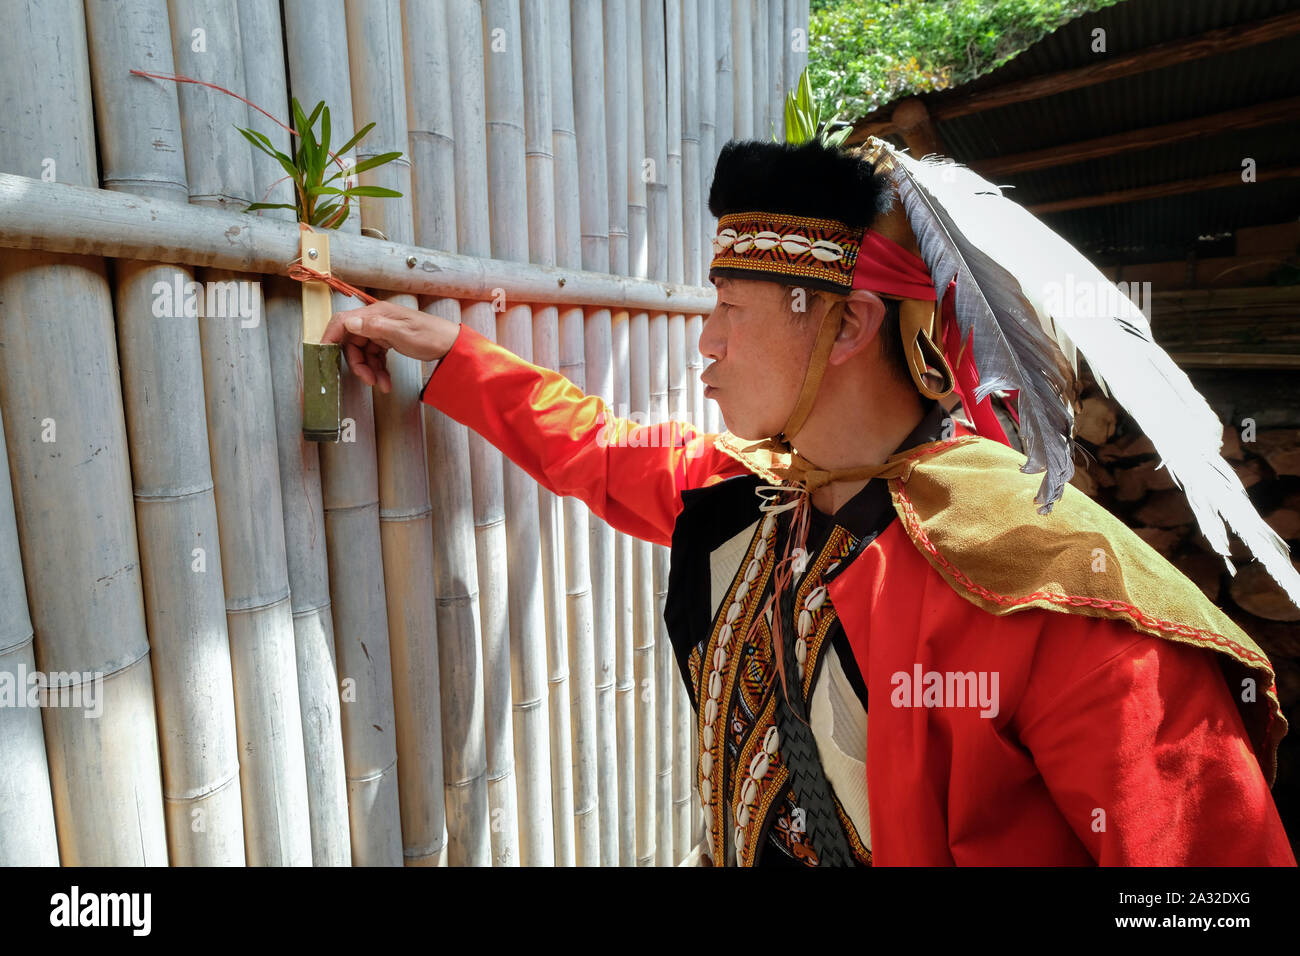 Robe rouge à la parade des hommes Tsou Tsou festival Mayasvi Tefuye dans le village de montagnes, dans l'Alishan Chiayi, Taïwan, l'Asie Banque D'Images